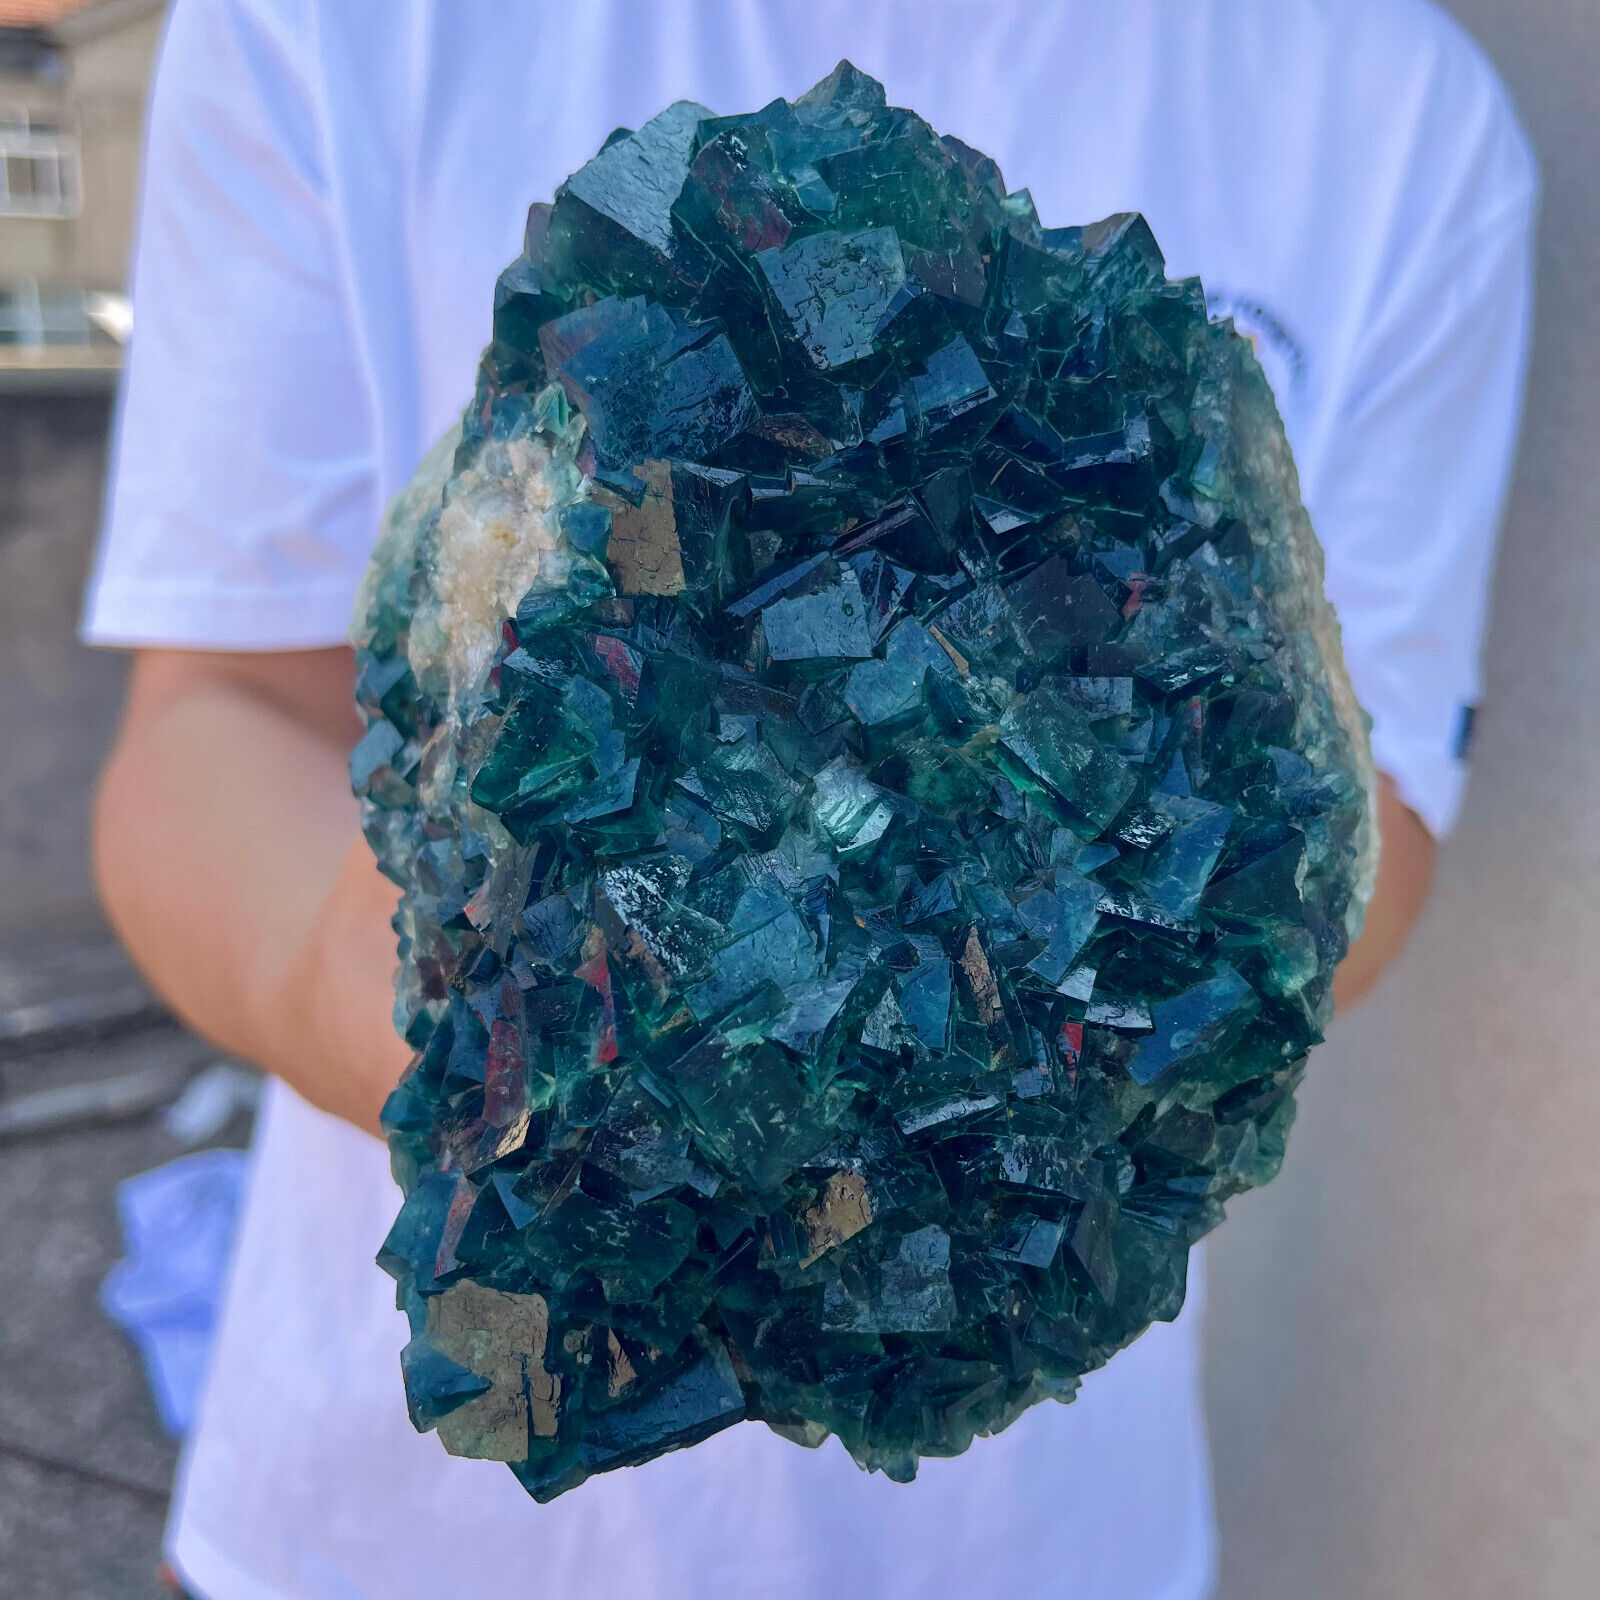 7.7lb Large NATURAL Green Cube FLUORITE Quartz Crystal Cluster Mineral Specimen